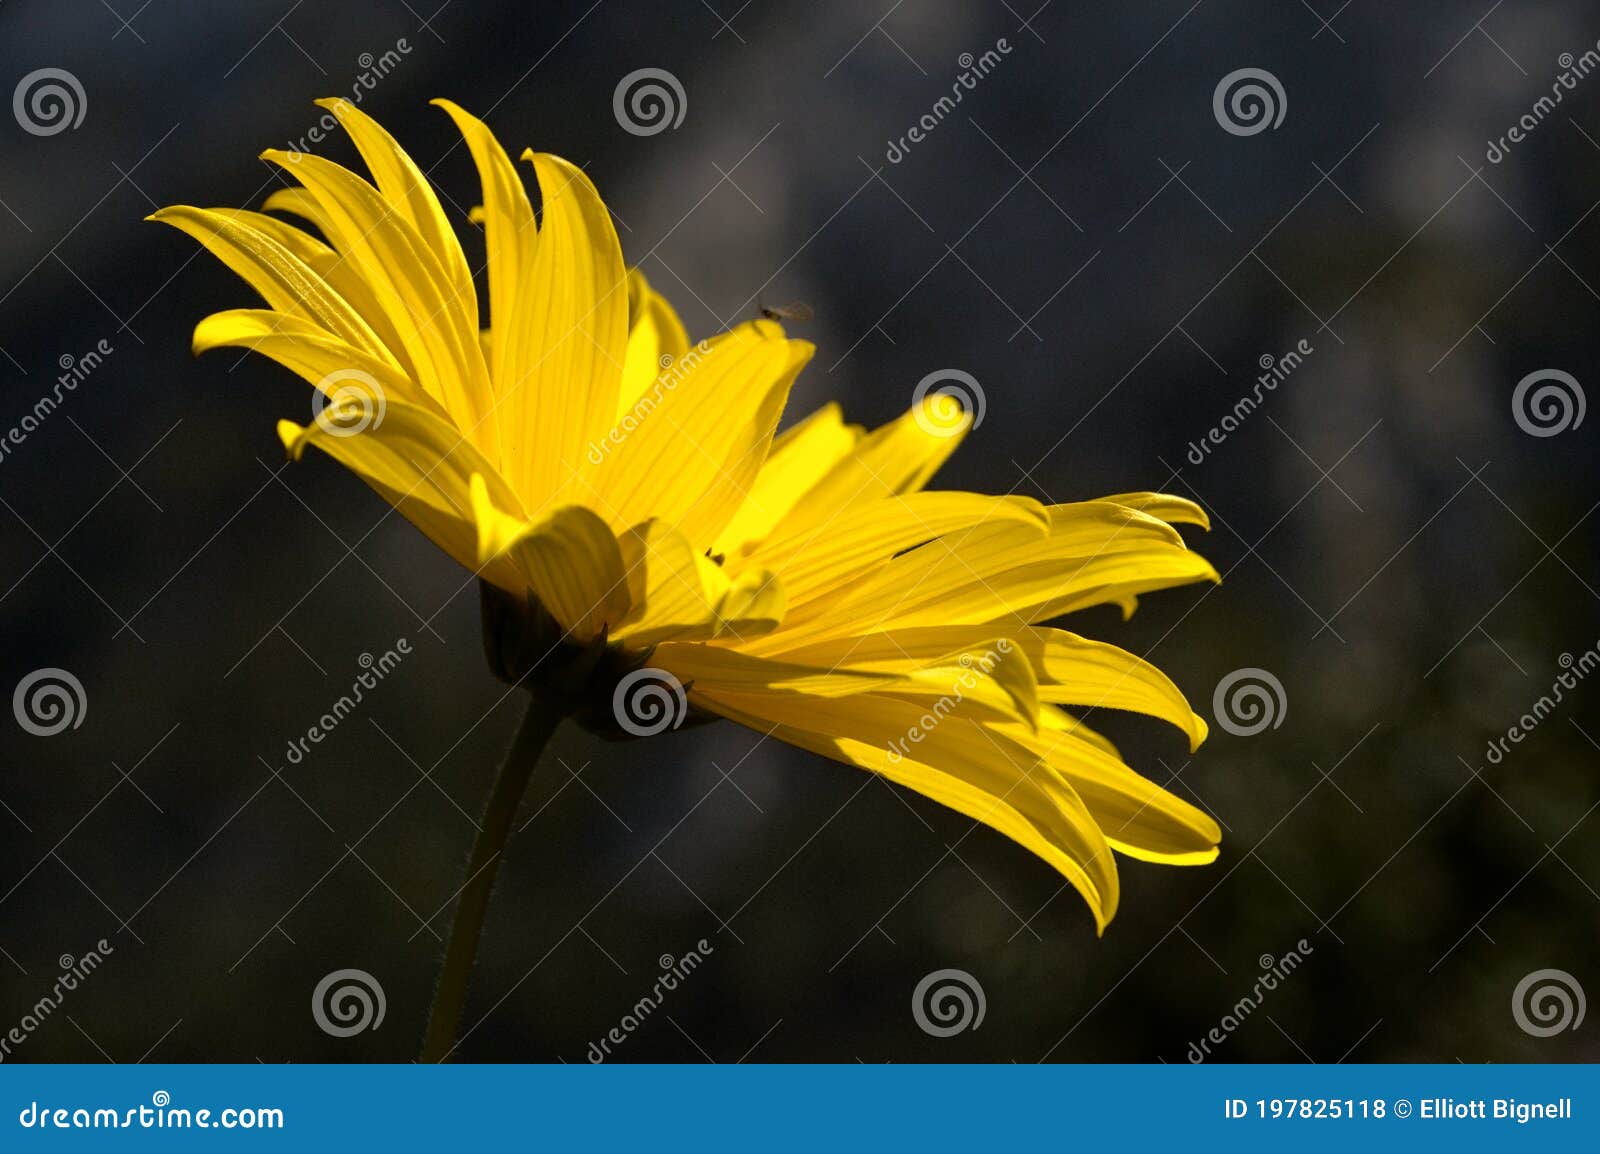 jerusalem artichoke flowering in swiss cottage garden in strong sunlight